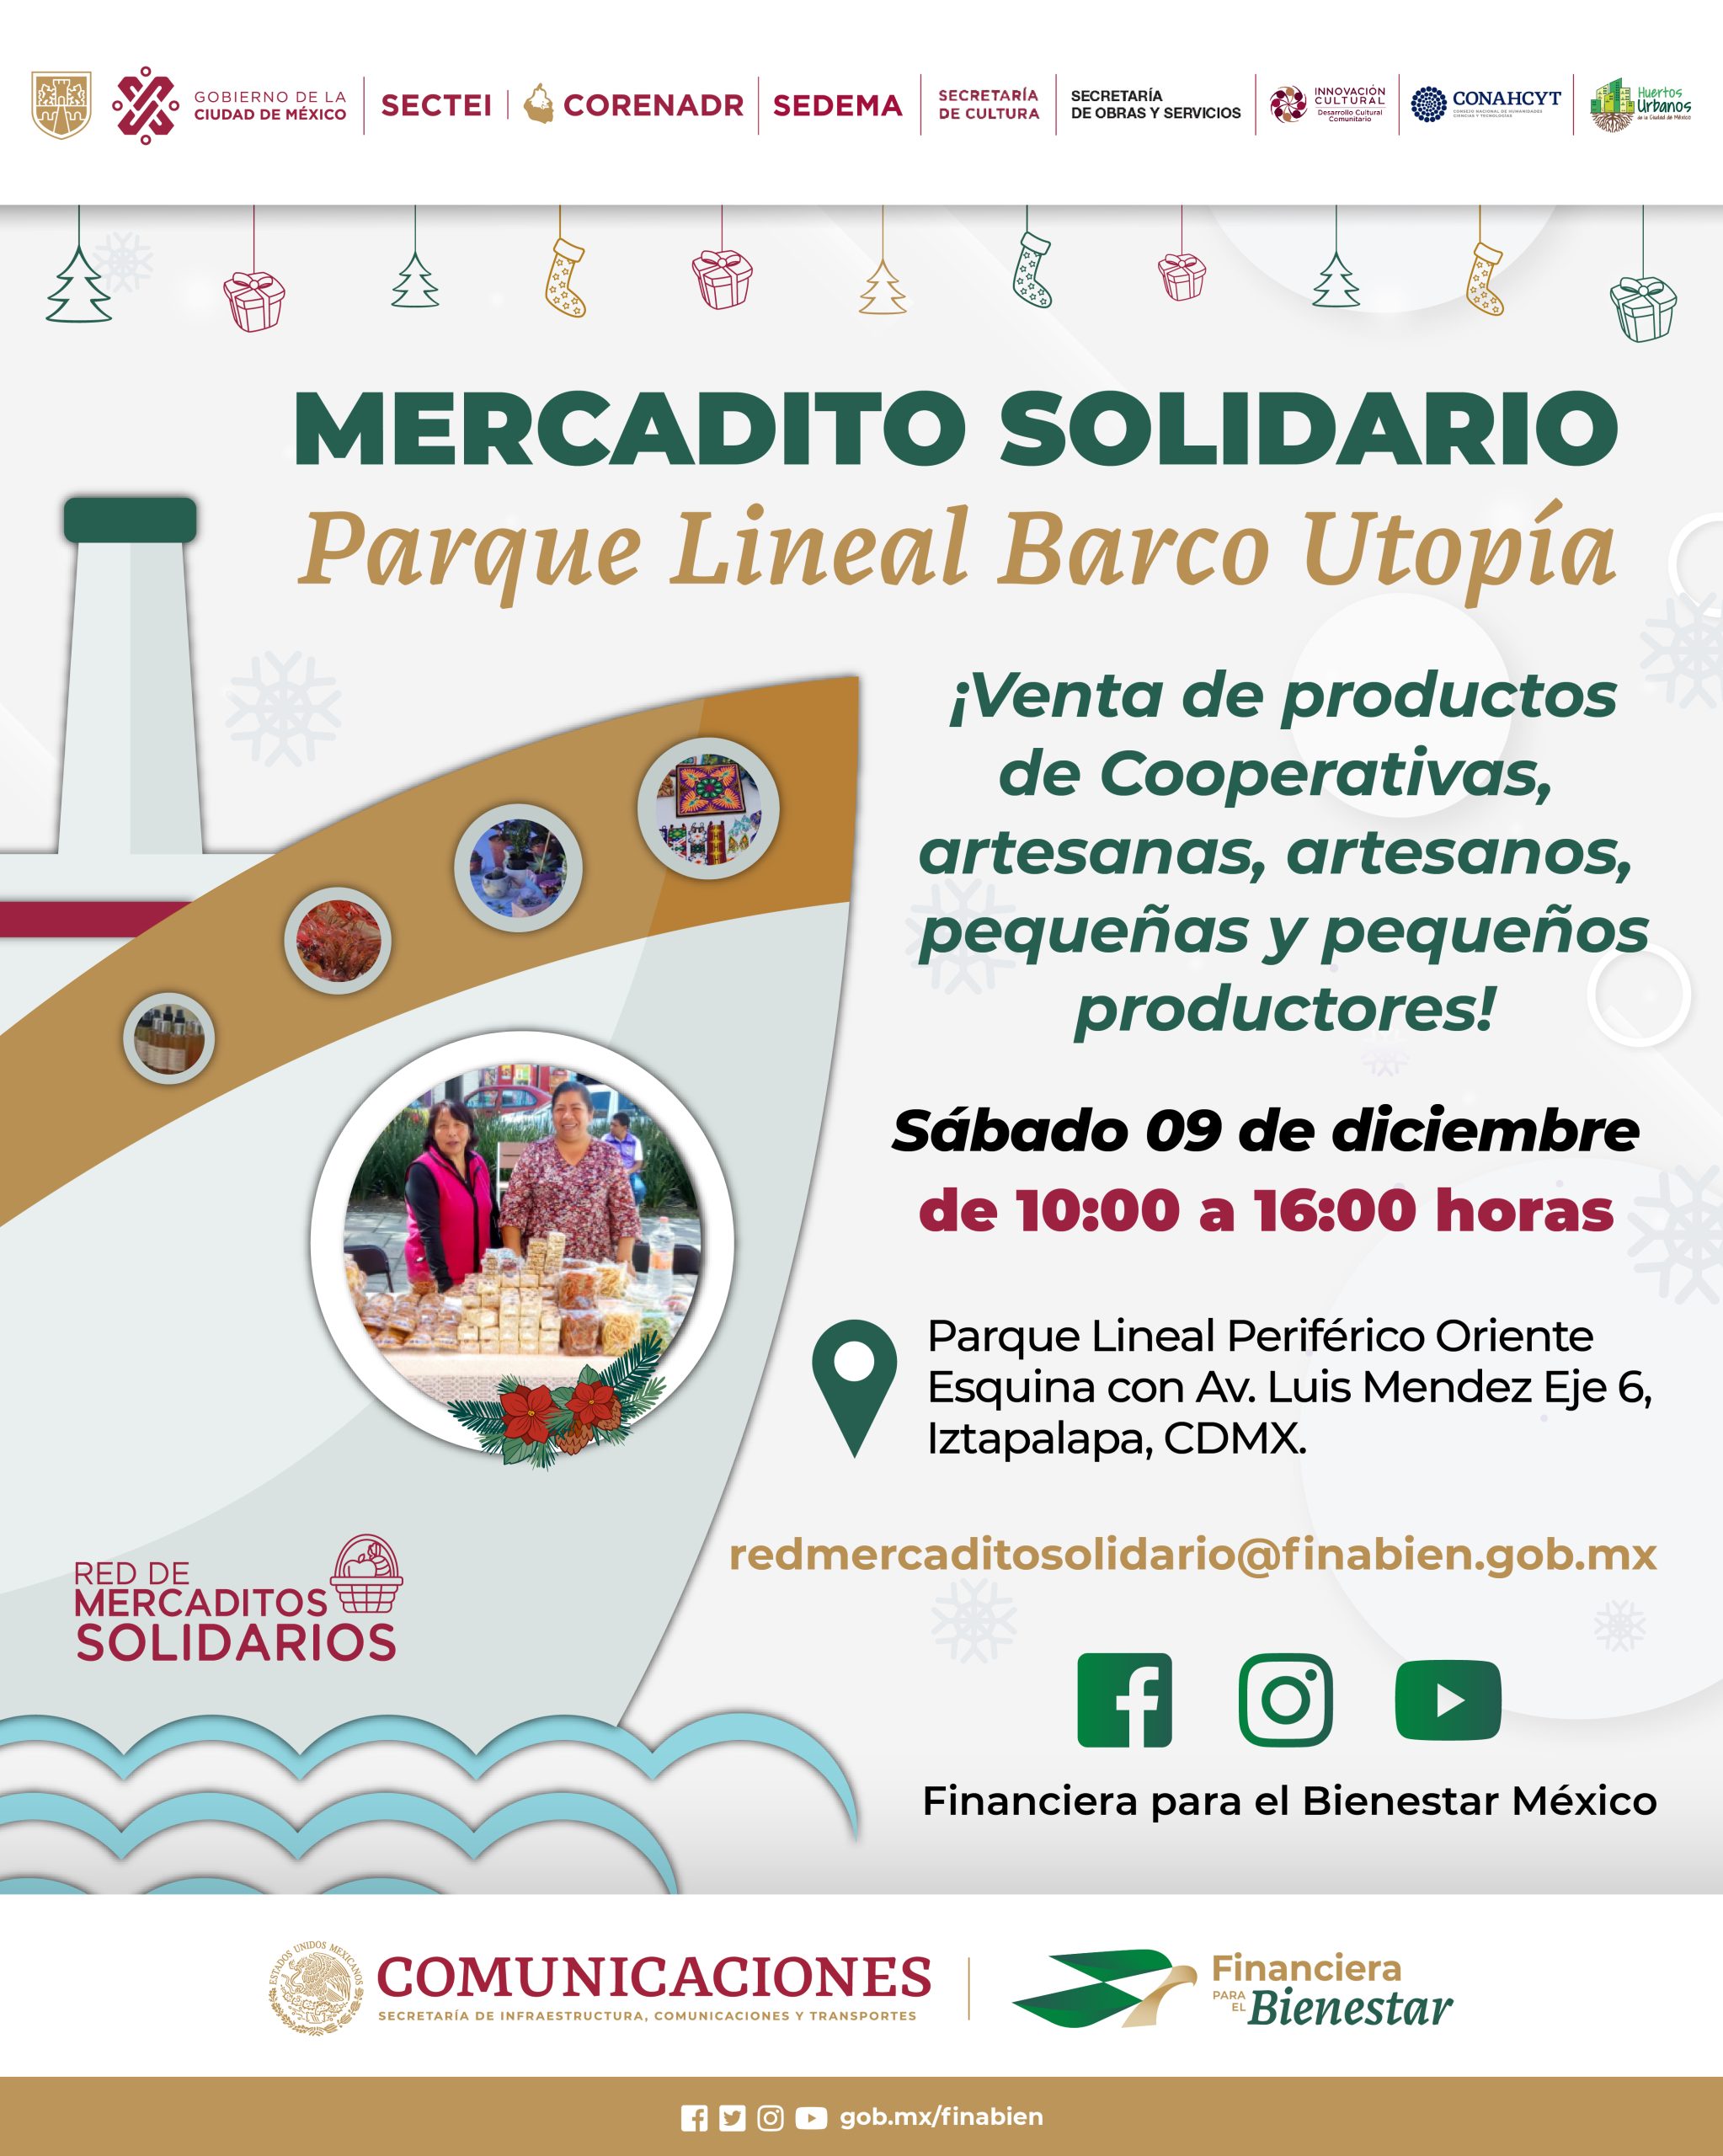 Mercadito Solidario Parque Lineal Barco Utopía